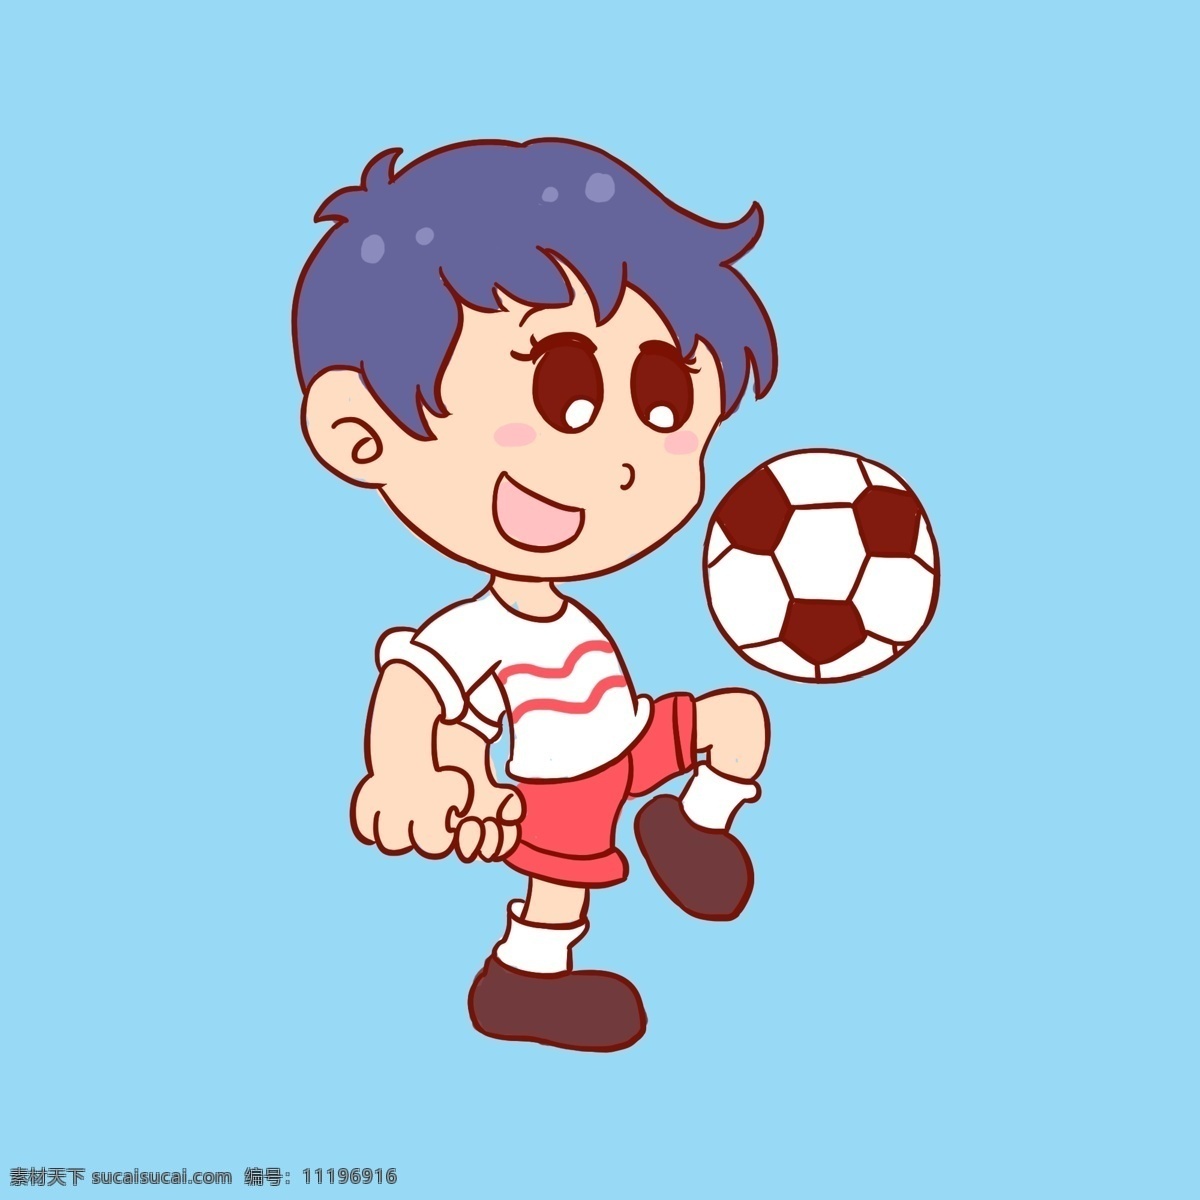 男孩 踢 足球图片 踢球 足球 运动 手绘 卡通男孩